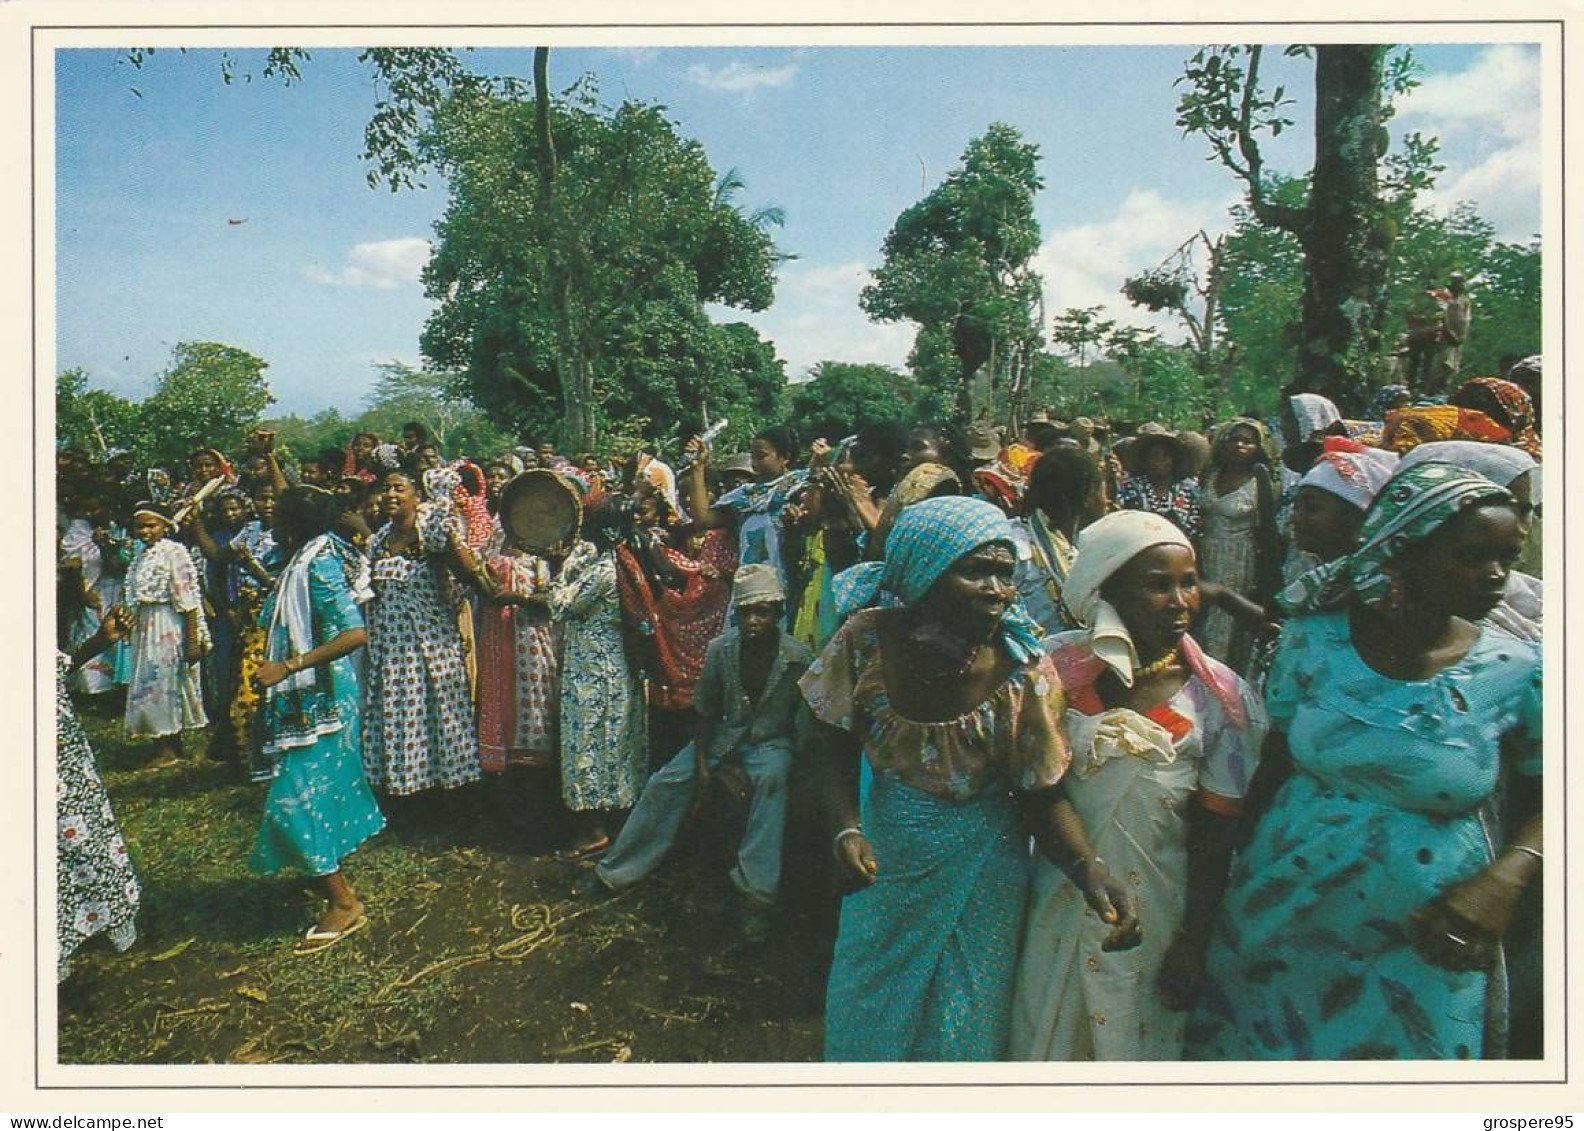 GRANDE COMORES NGAZIDJA DANSE DU PILON WADAHA + FEMMES EN FETE + PLAGE ET HOTEL ITSANDRA 1988 - Comoros